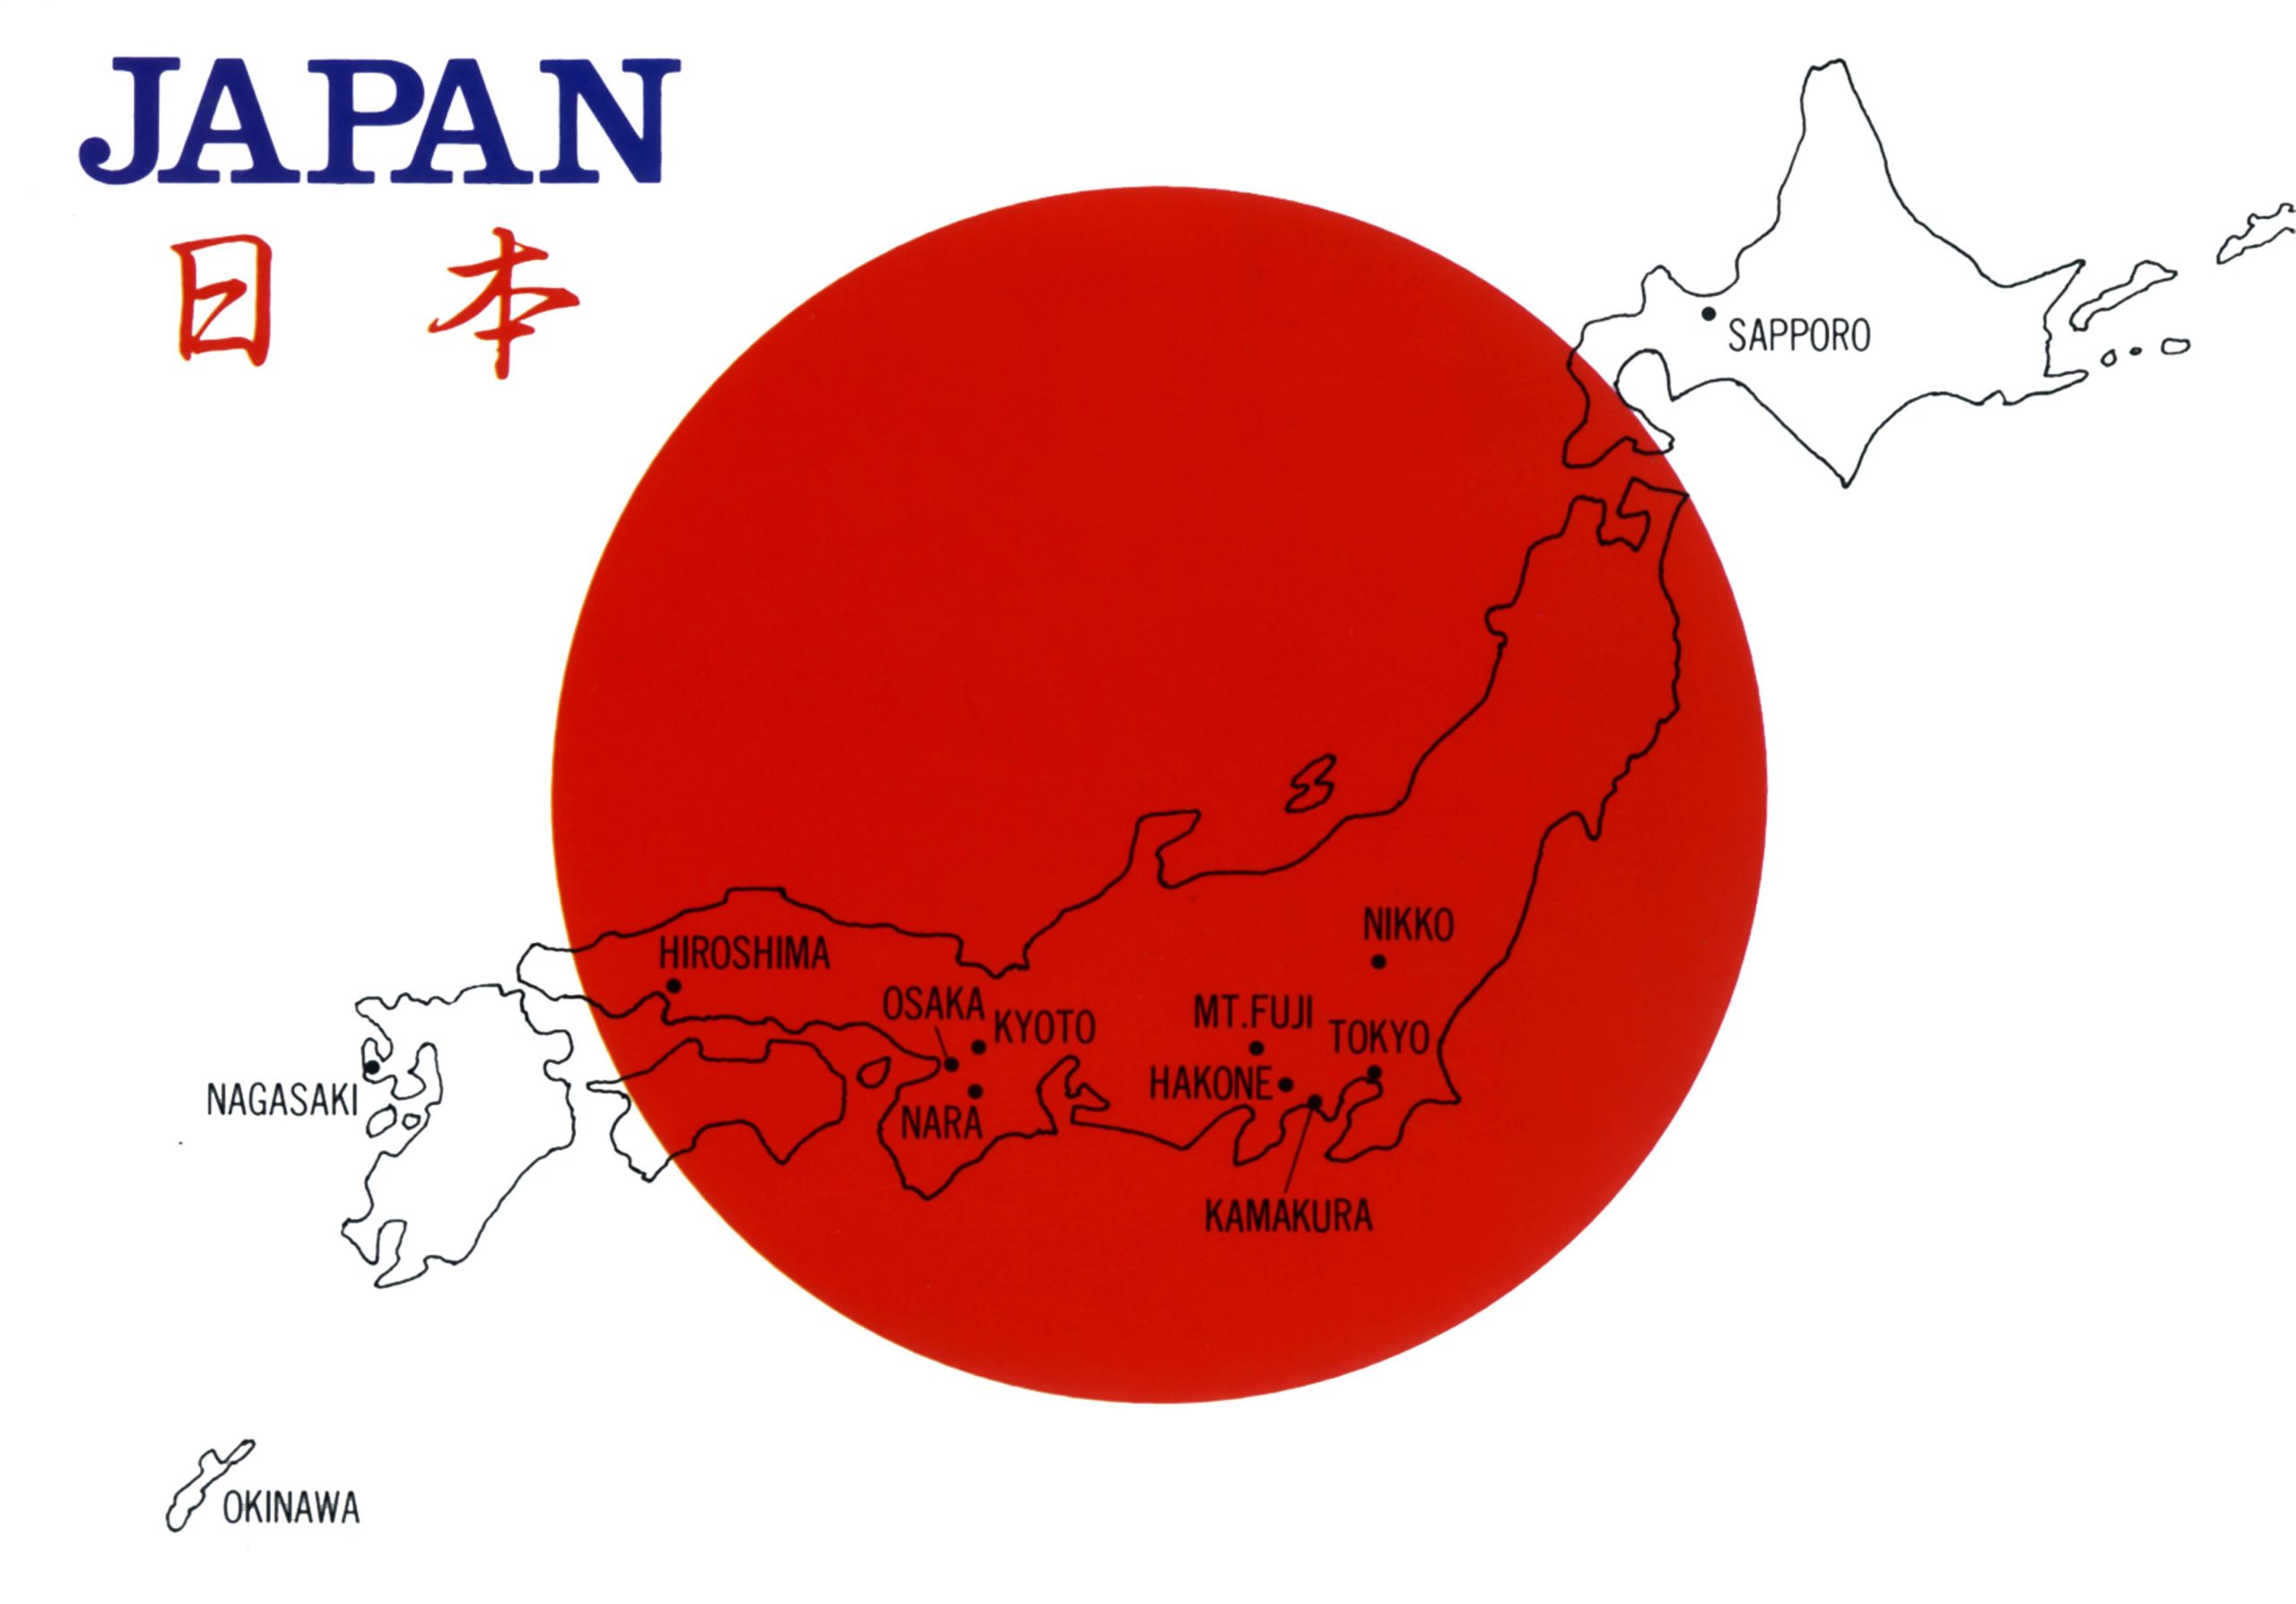 Dịch vụ chuyển phát nhanh hàng hóa giá trị cao từ Phú Quốc đi Nhật Bản an toàn, thuận tiện, giá cả ưu đãi và uy tín